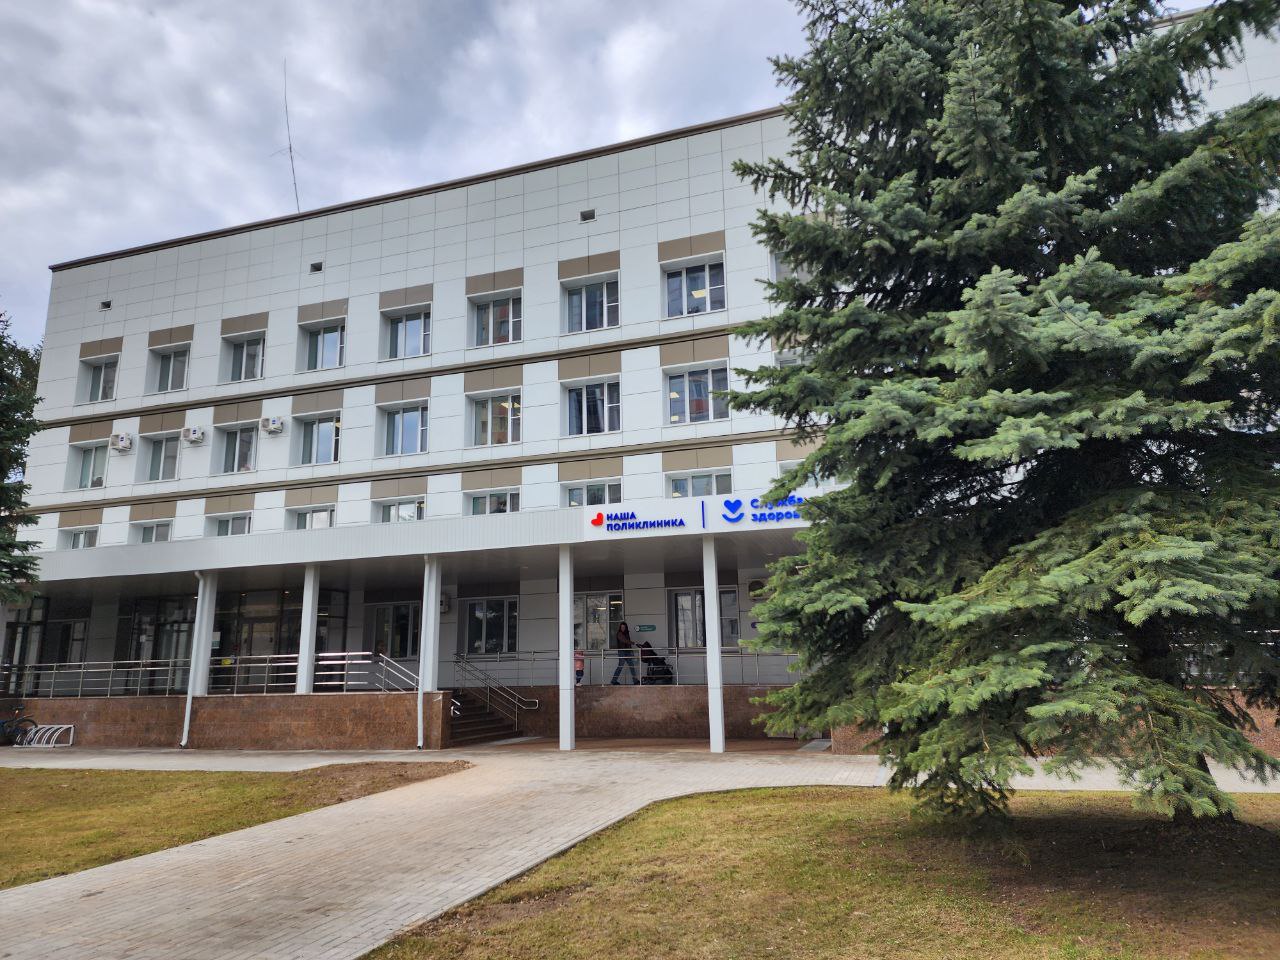 Жители Королёва отмечают, что после ремонта поликлиники в микрорайоне Юбилейный стало гораздо удобнее получать медицинские услуги